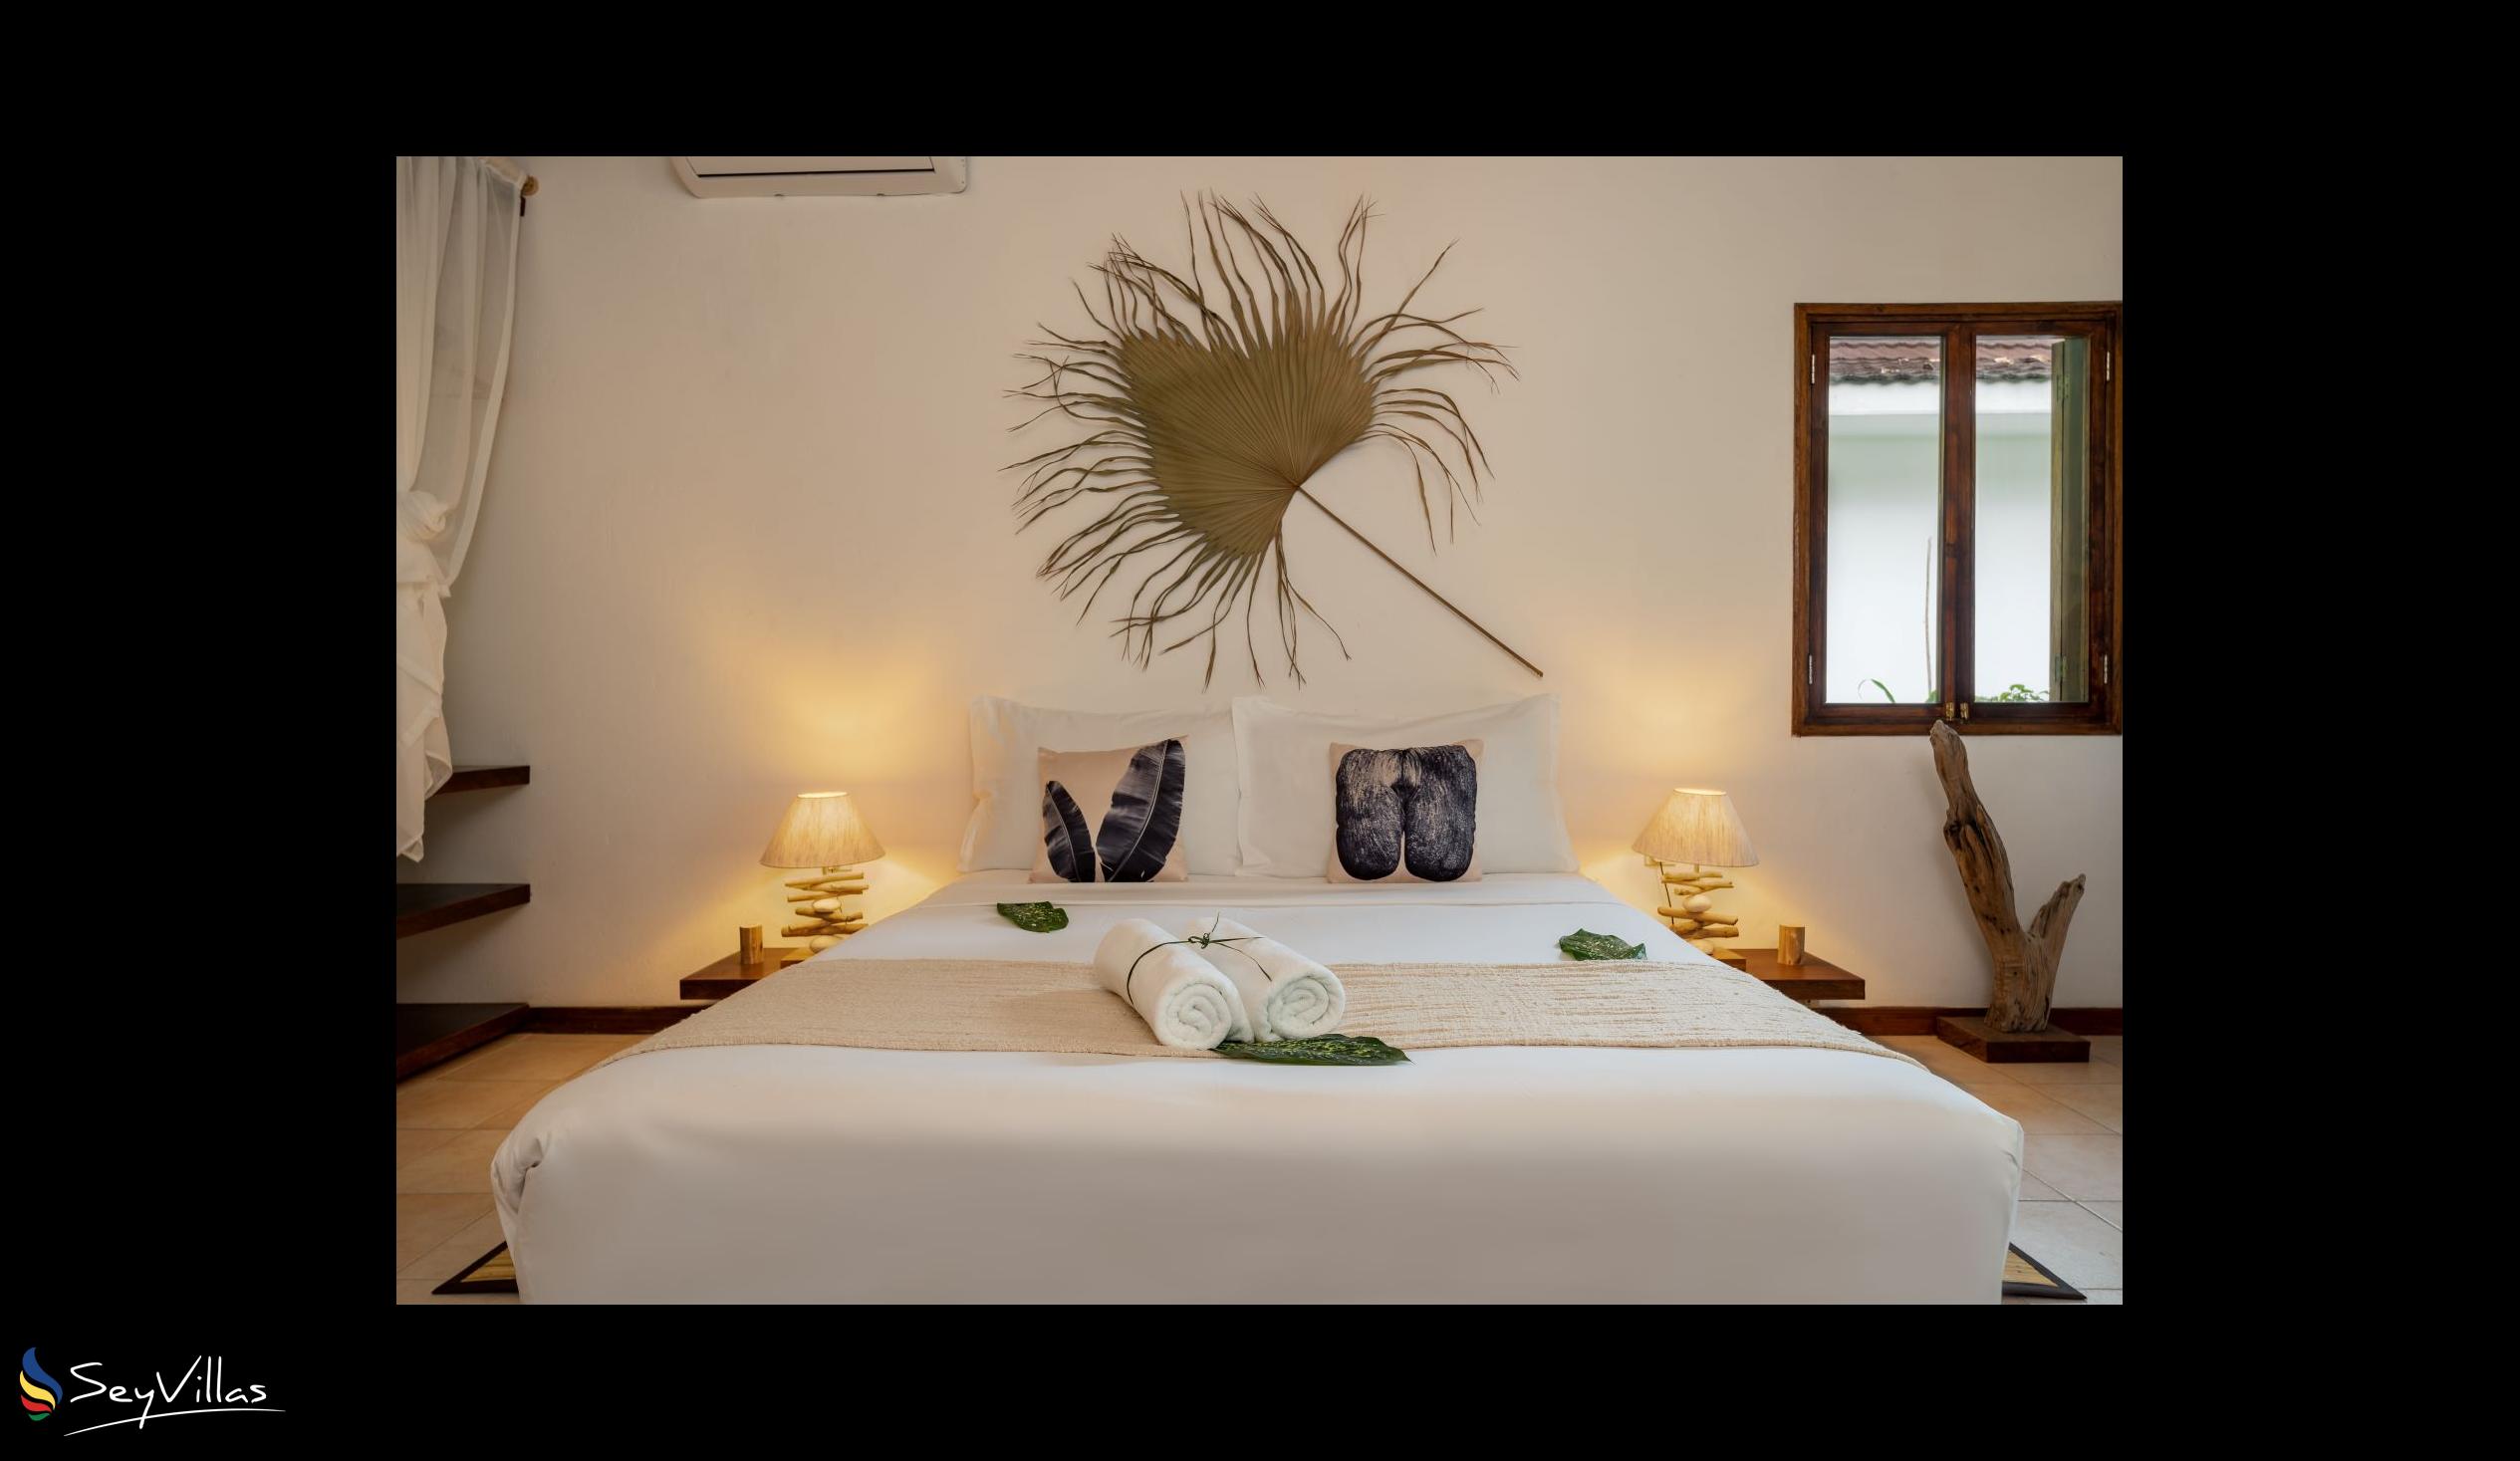 Photo 51: Bliss Hotel Praslin - Eden Garden - Superior Room - Praslin (Seychelles)